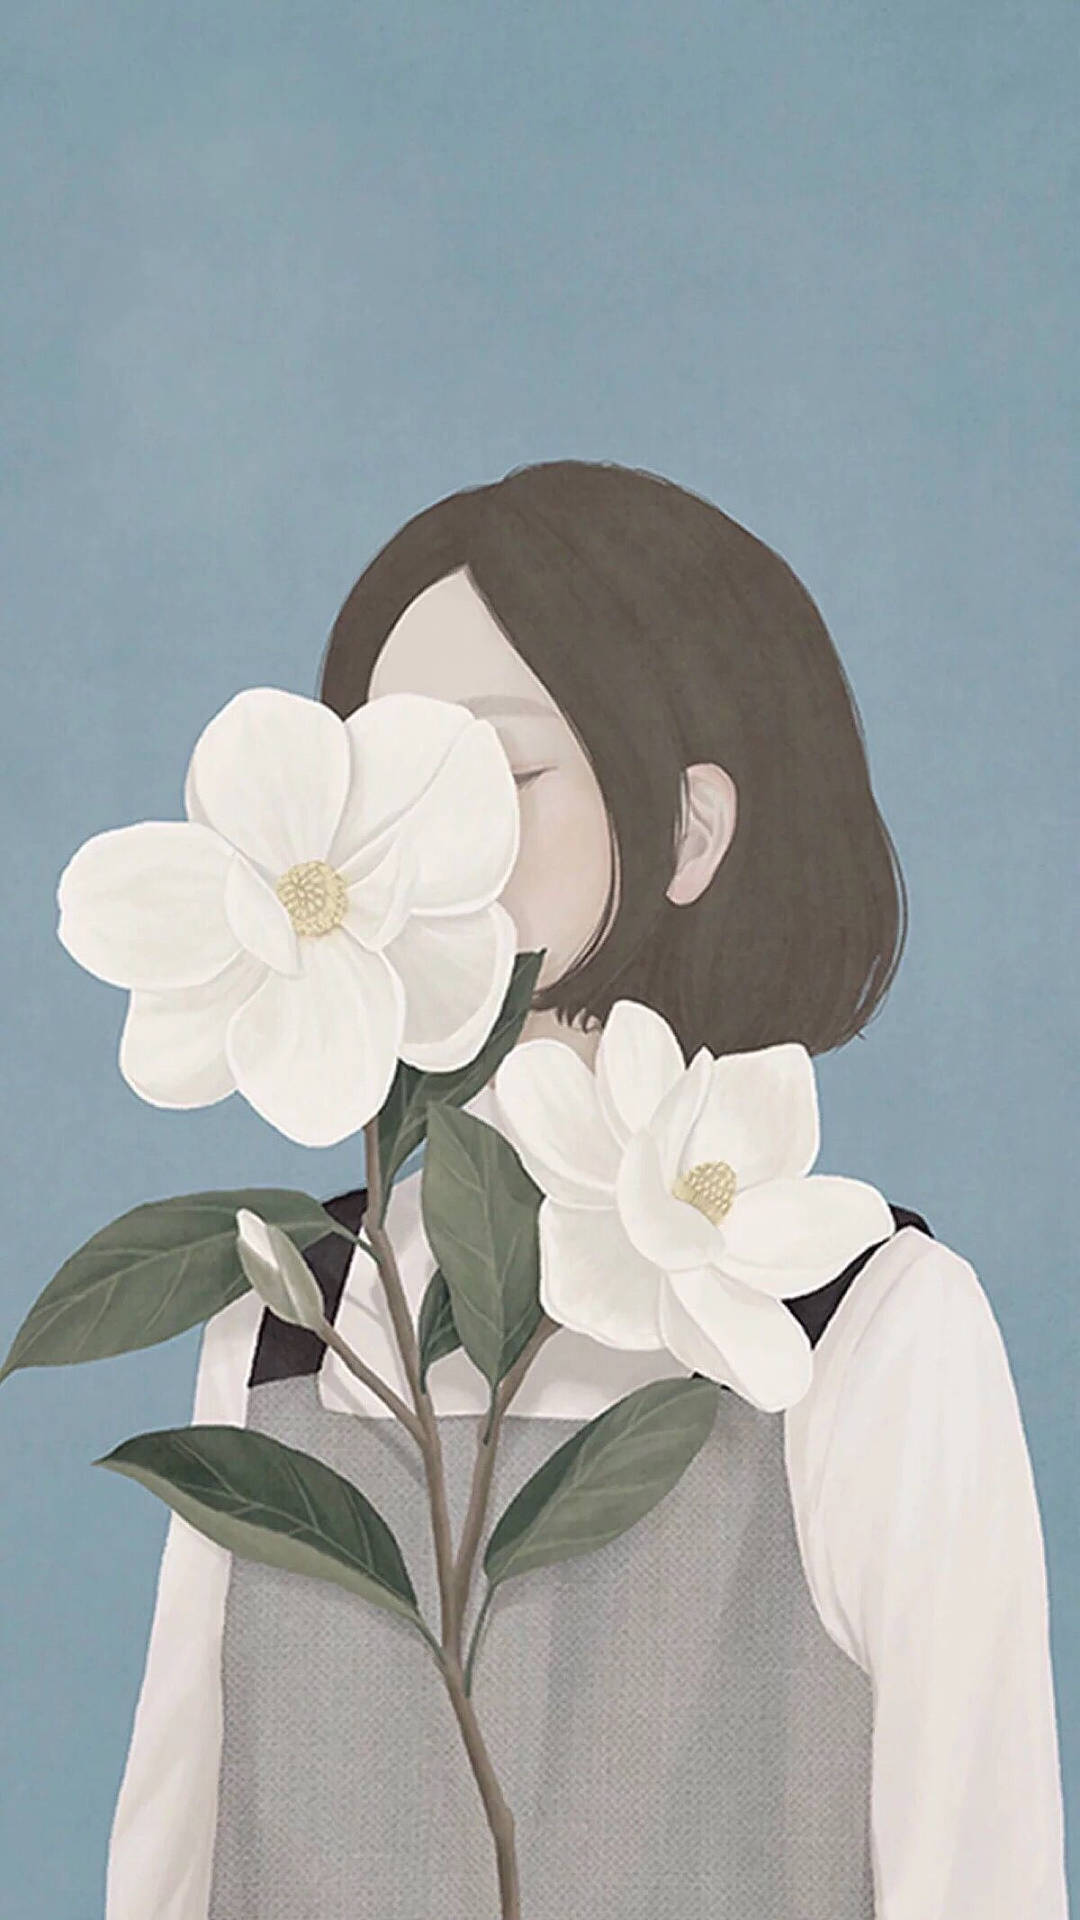 One-Sided Love Flower Girl Art Wallpaper